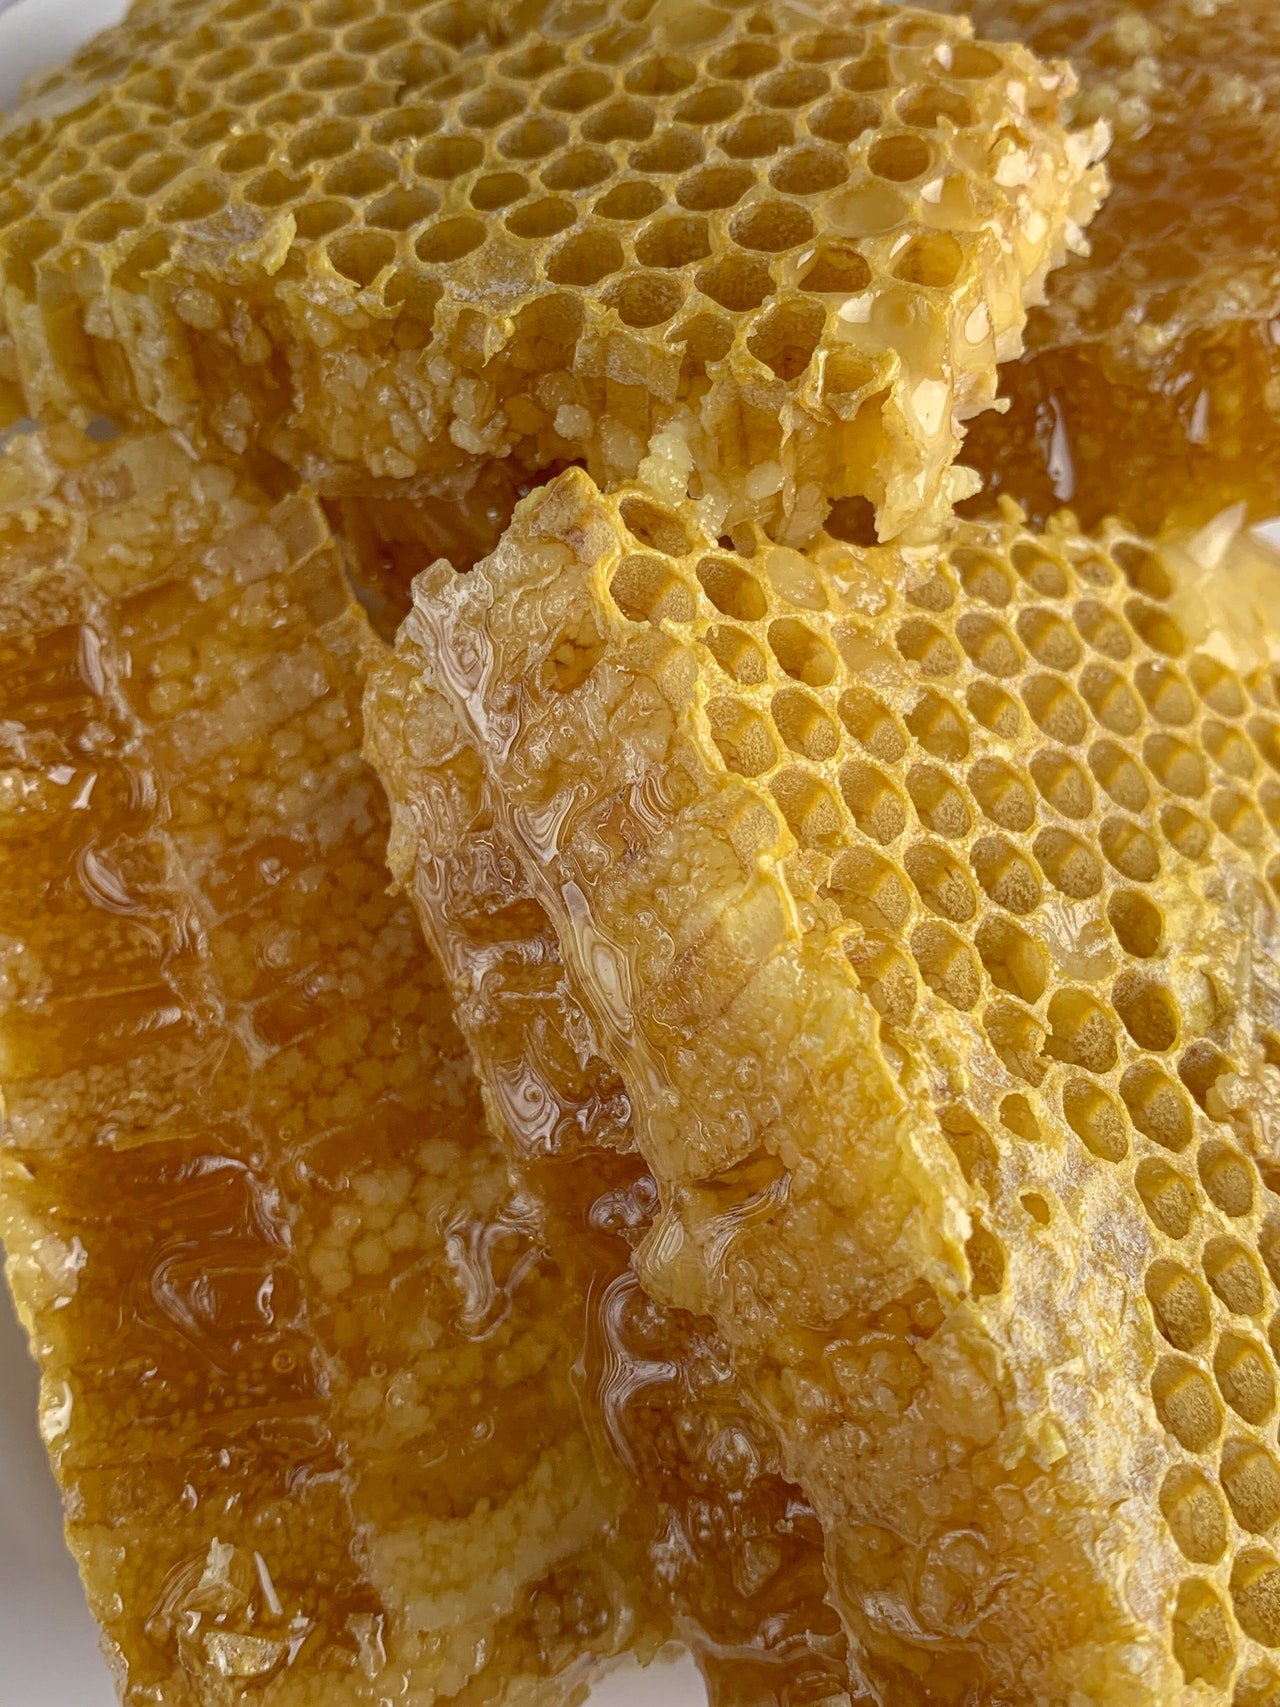 Why You Should Choose Raw Manuka Honey